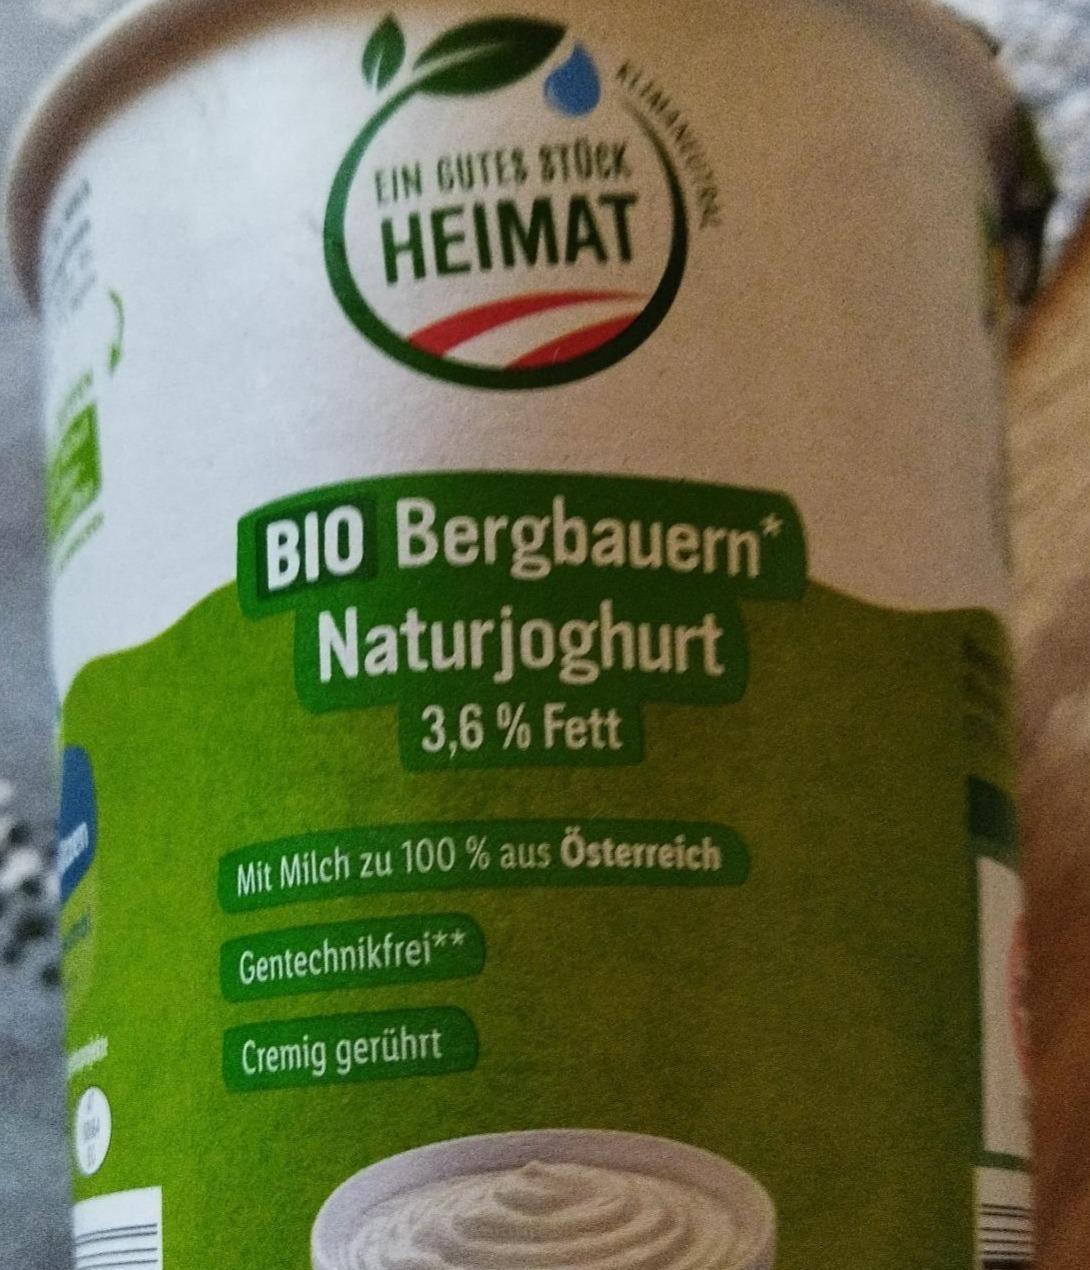 Fotografie - Bio Bergbauern Naturjoghurt 3,6% Fett Ein gutes Stück Heimat